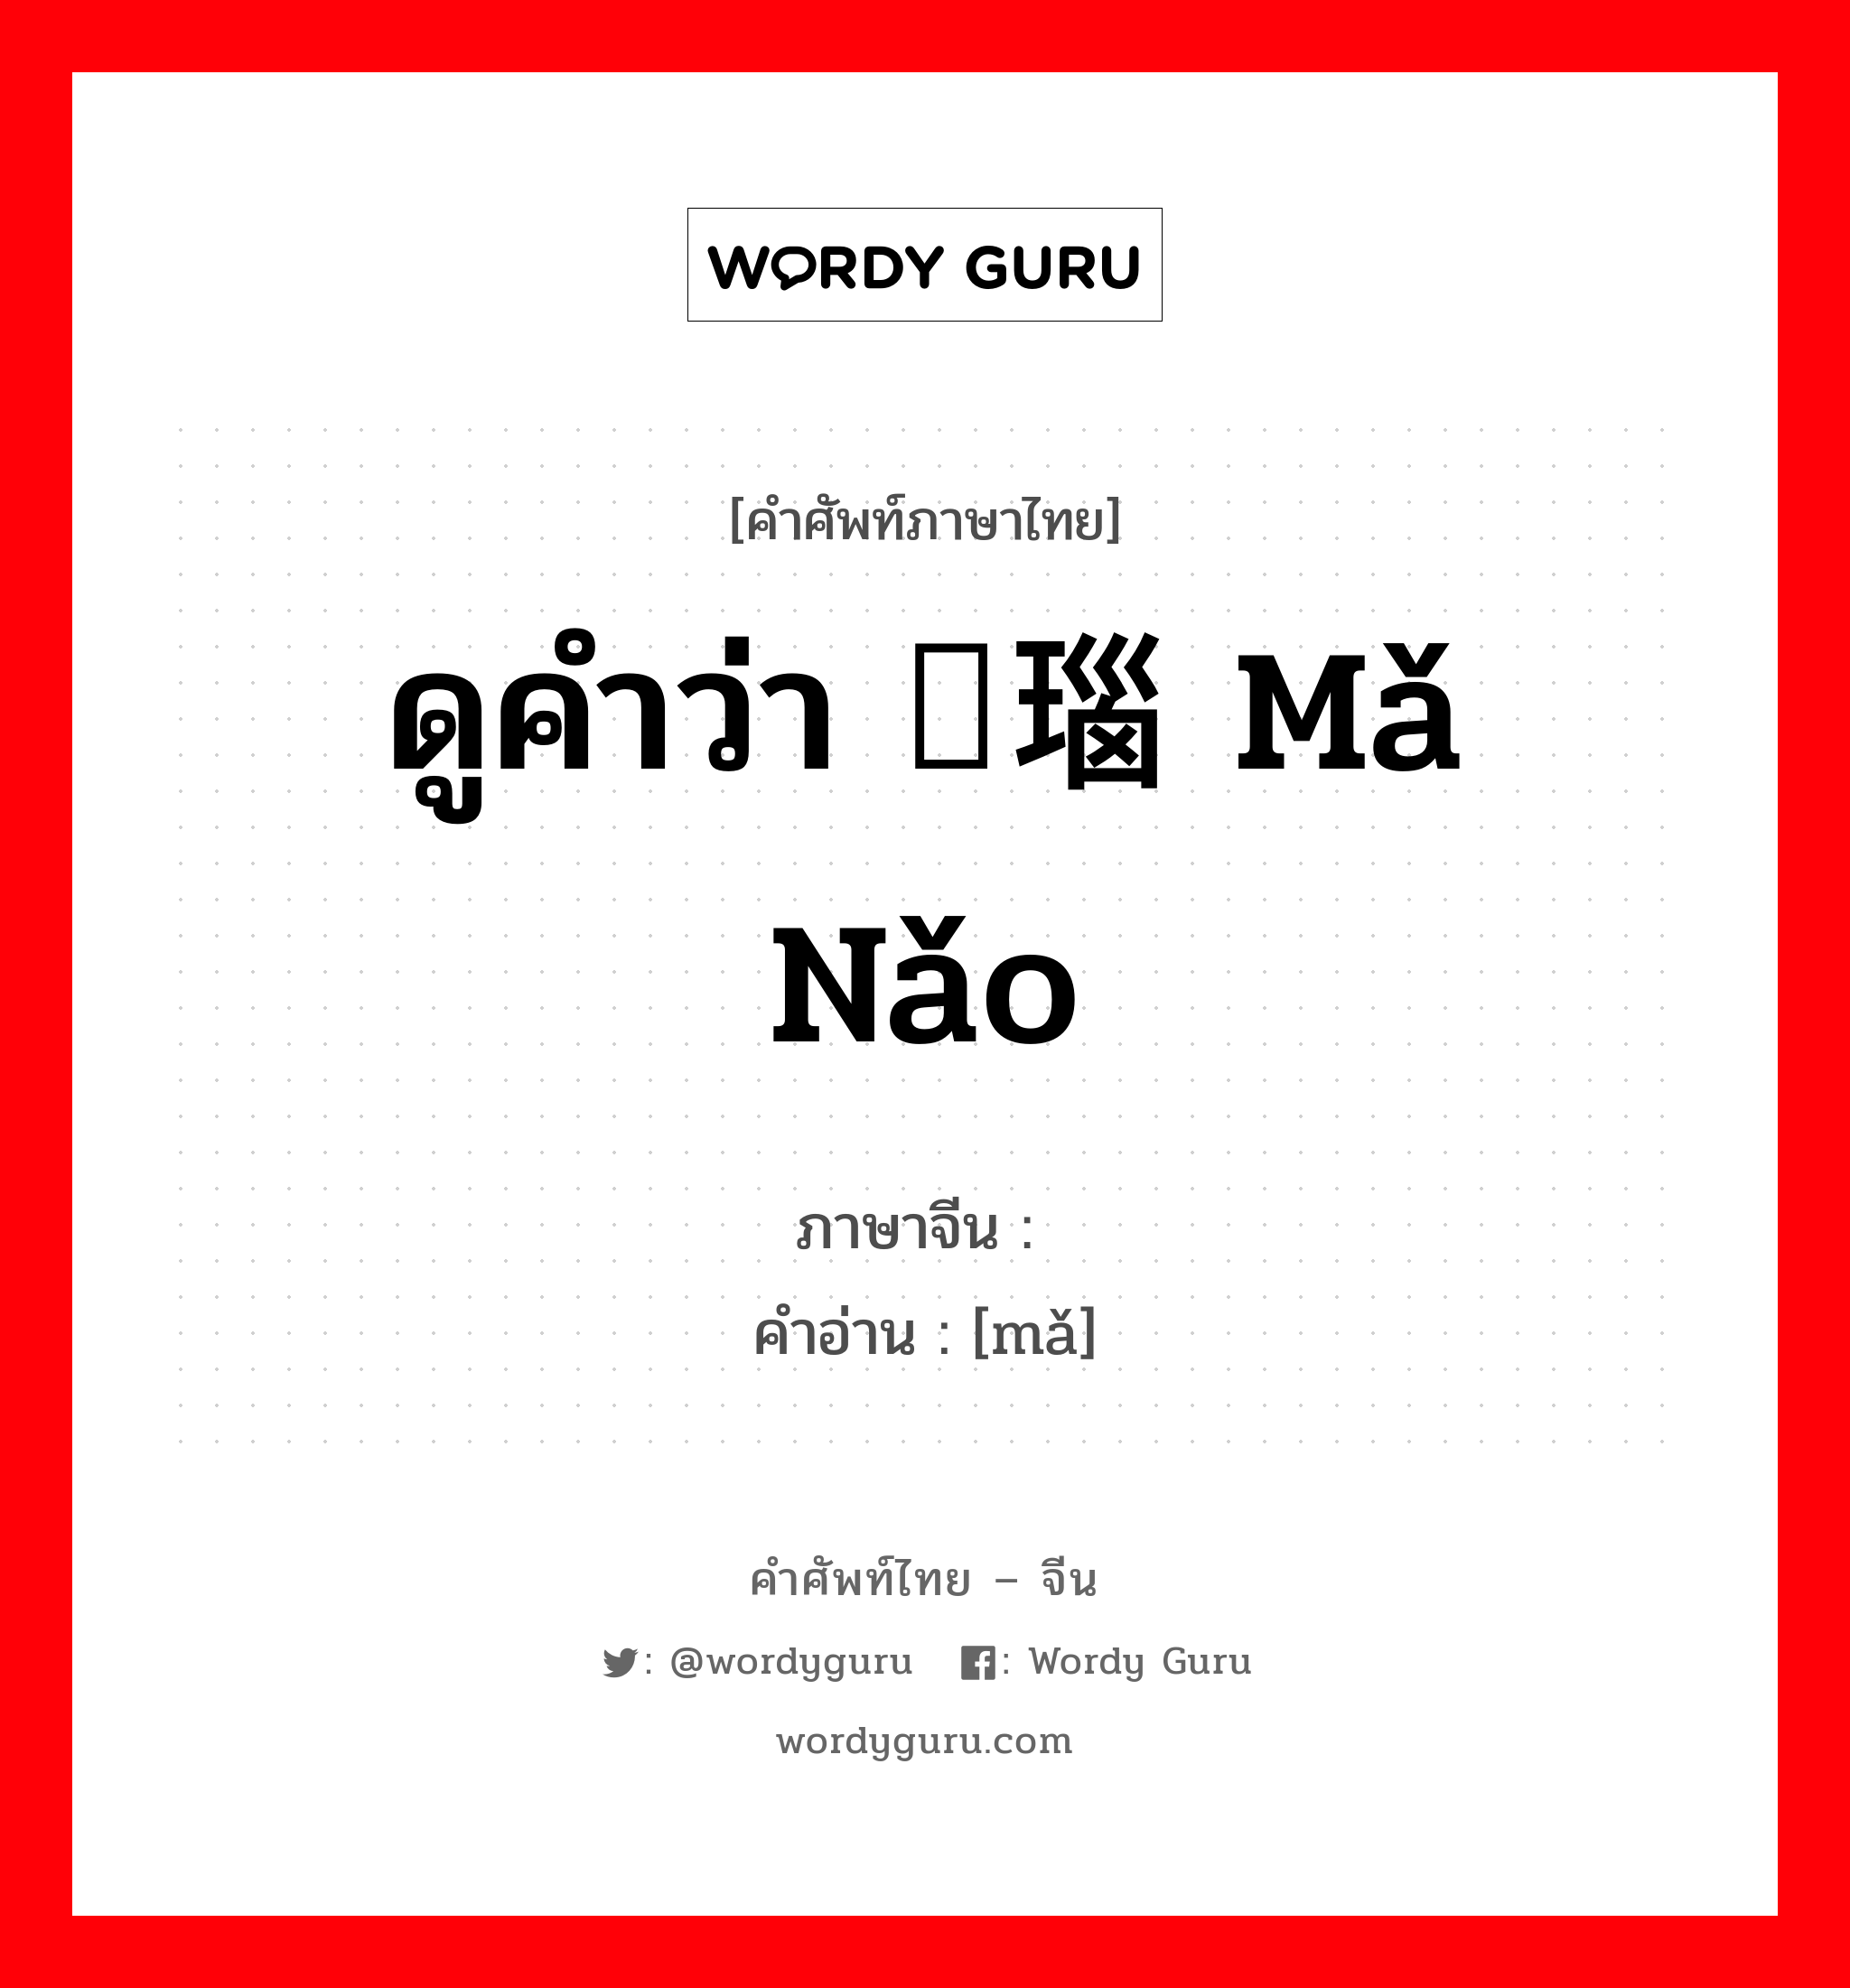 ดูคำว่า 玛瑙 mǎ nǎo ภาษาจีนคืออะไร, คำศัพท์ภาษาไทย - จีน ดูคำว่า 玛瑙 mǎ nǎo ภาษาจีน 玛 คำอ่าน [mǎ]